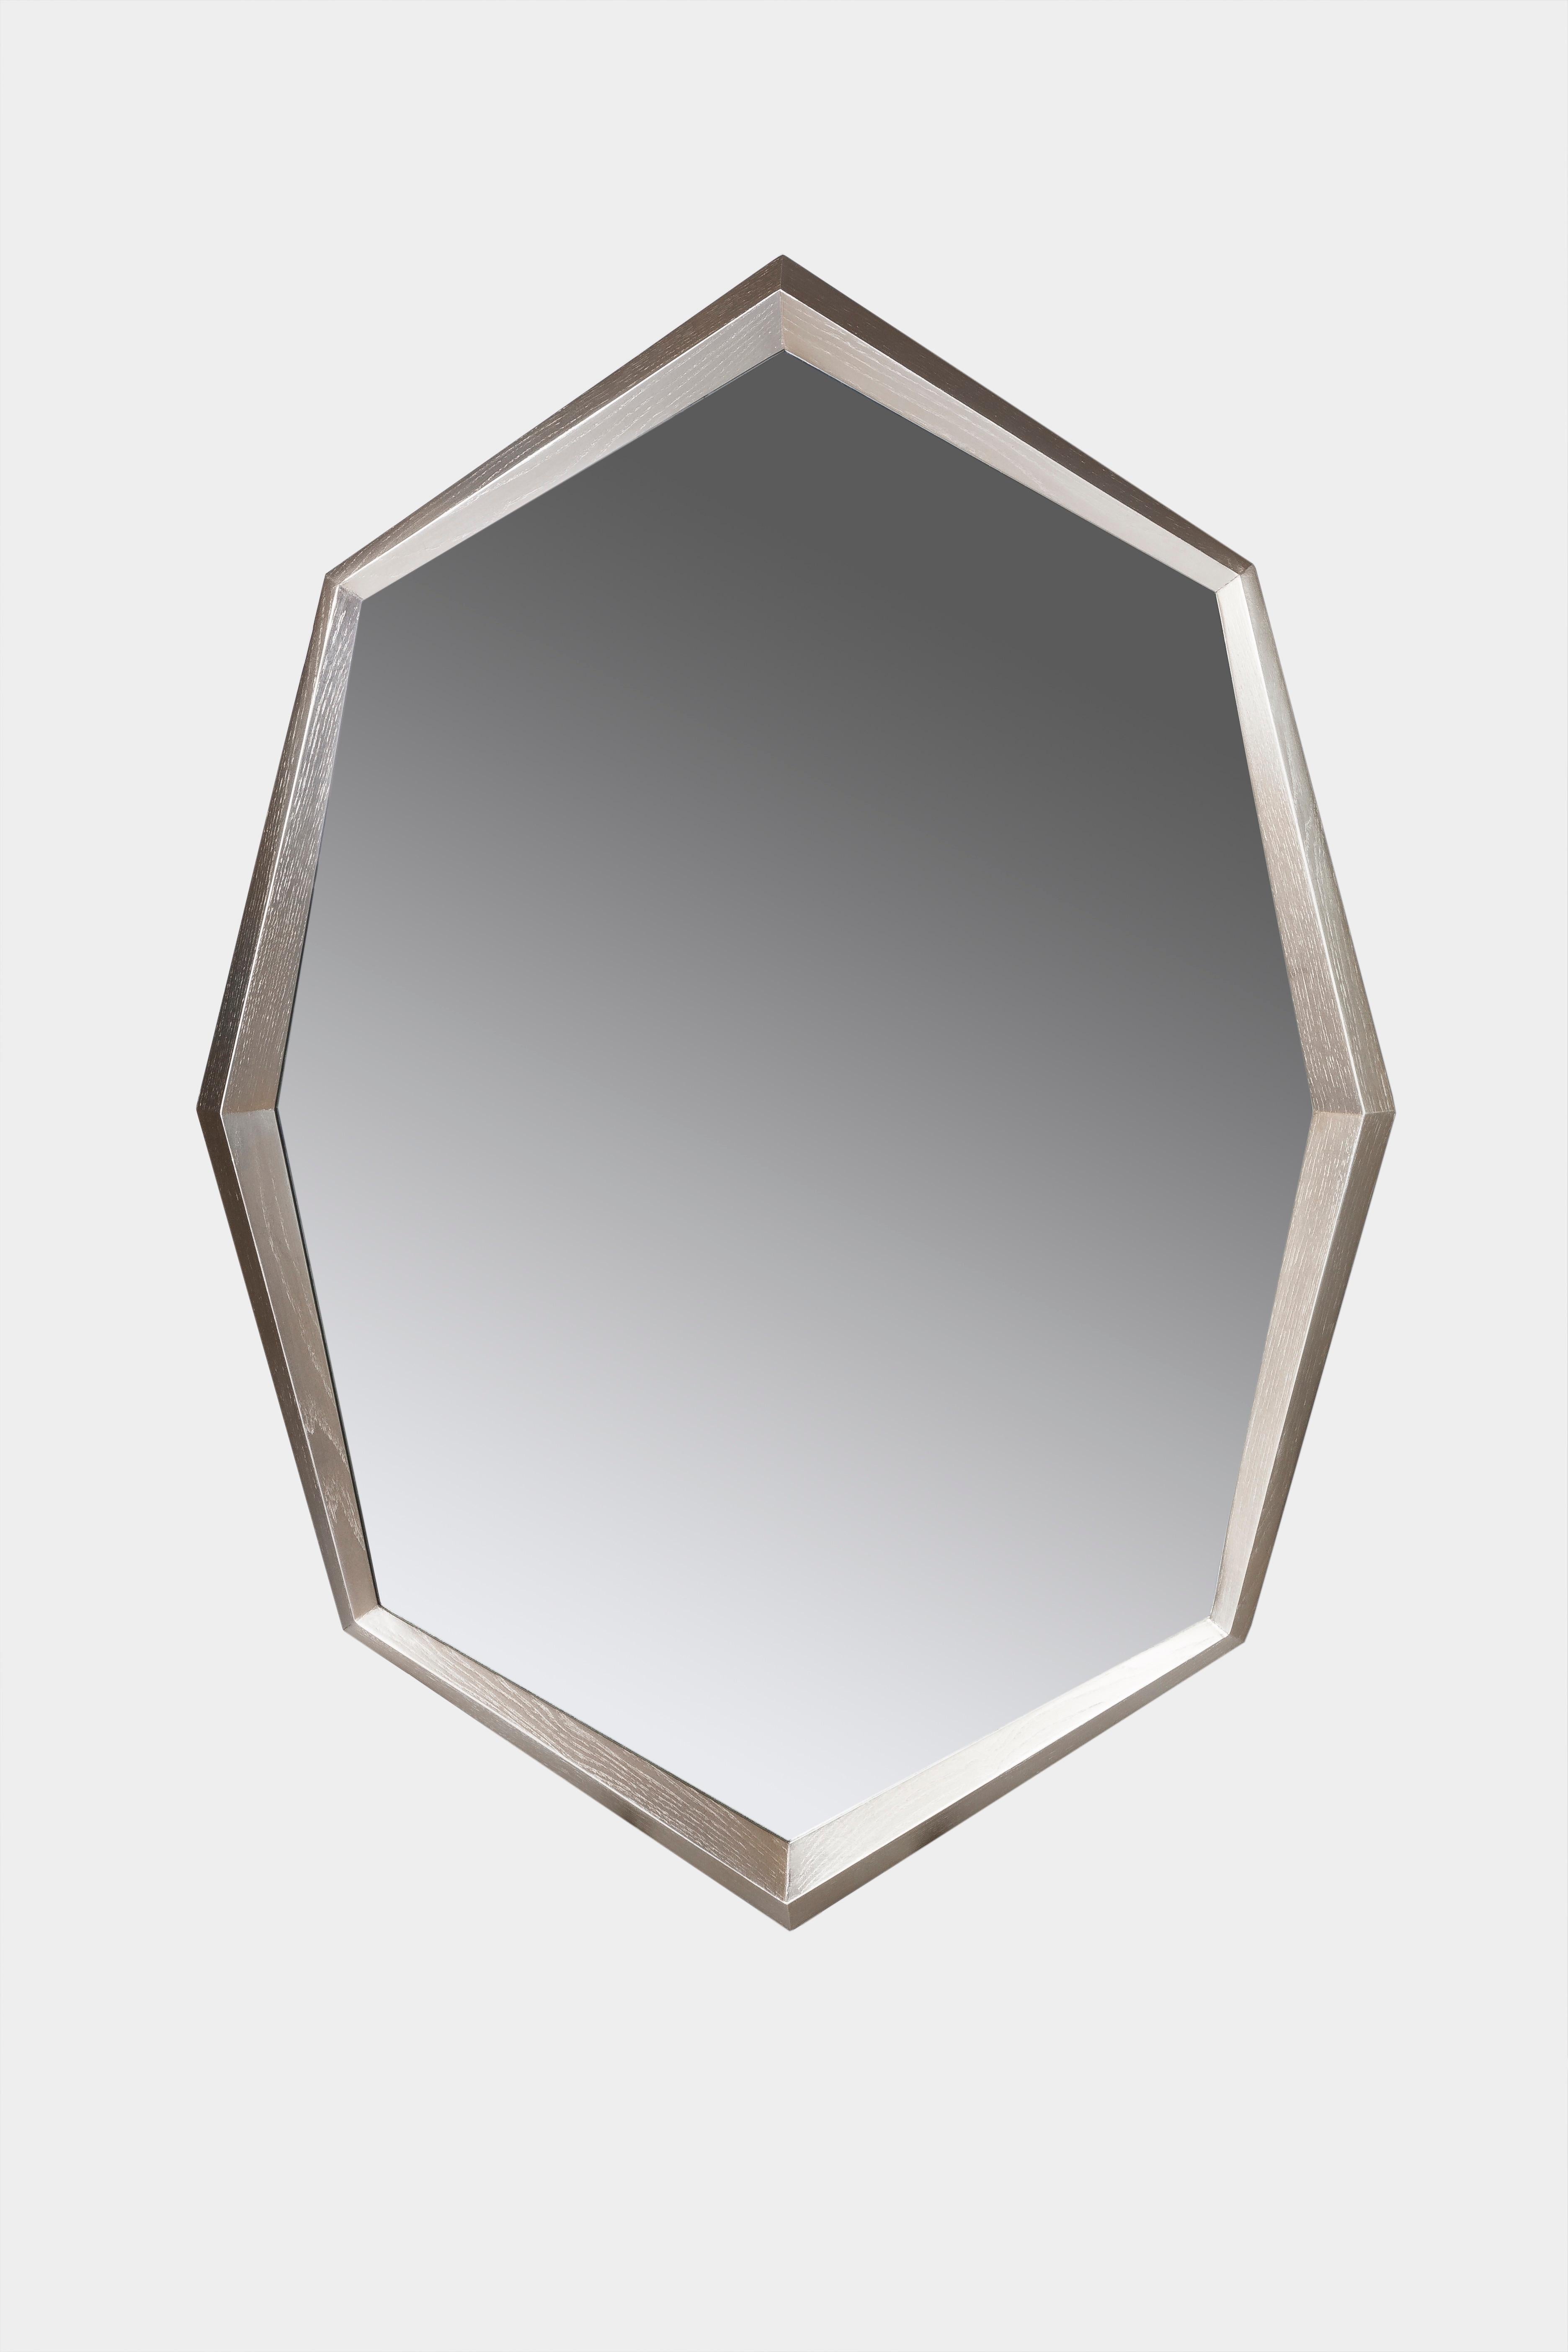 European Okulus Oval Mirror by Jean Louis Deniot for Marc de Berny For Sale